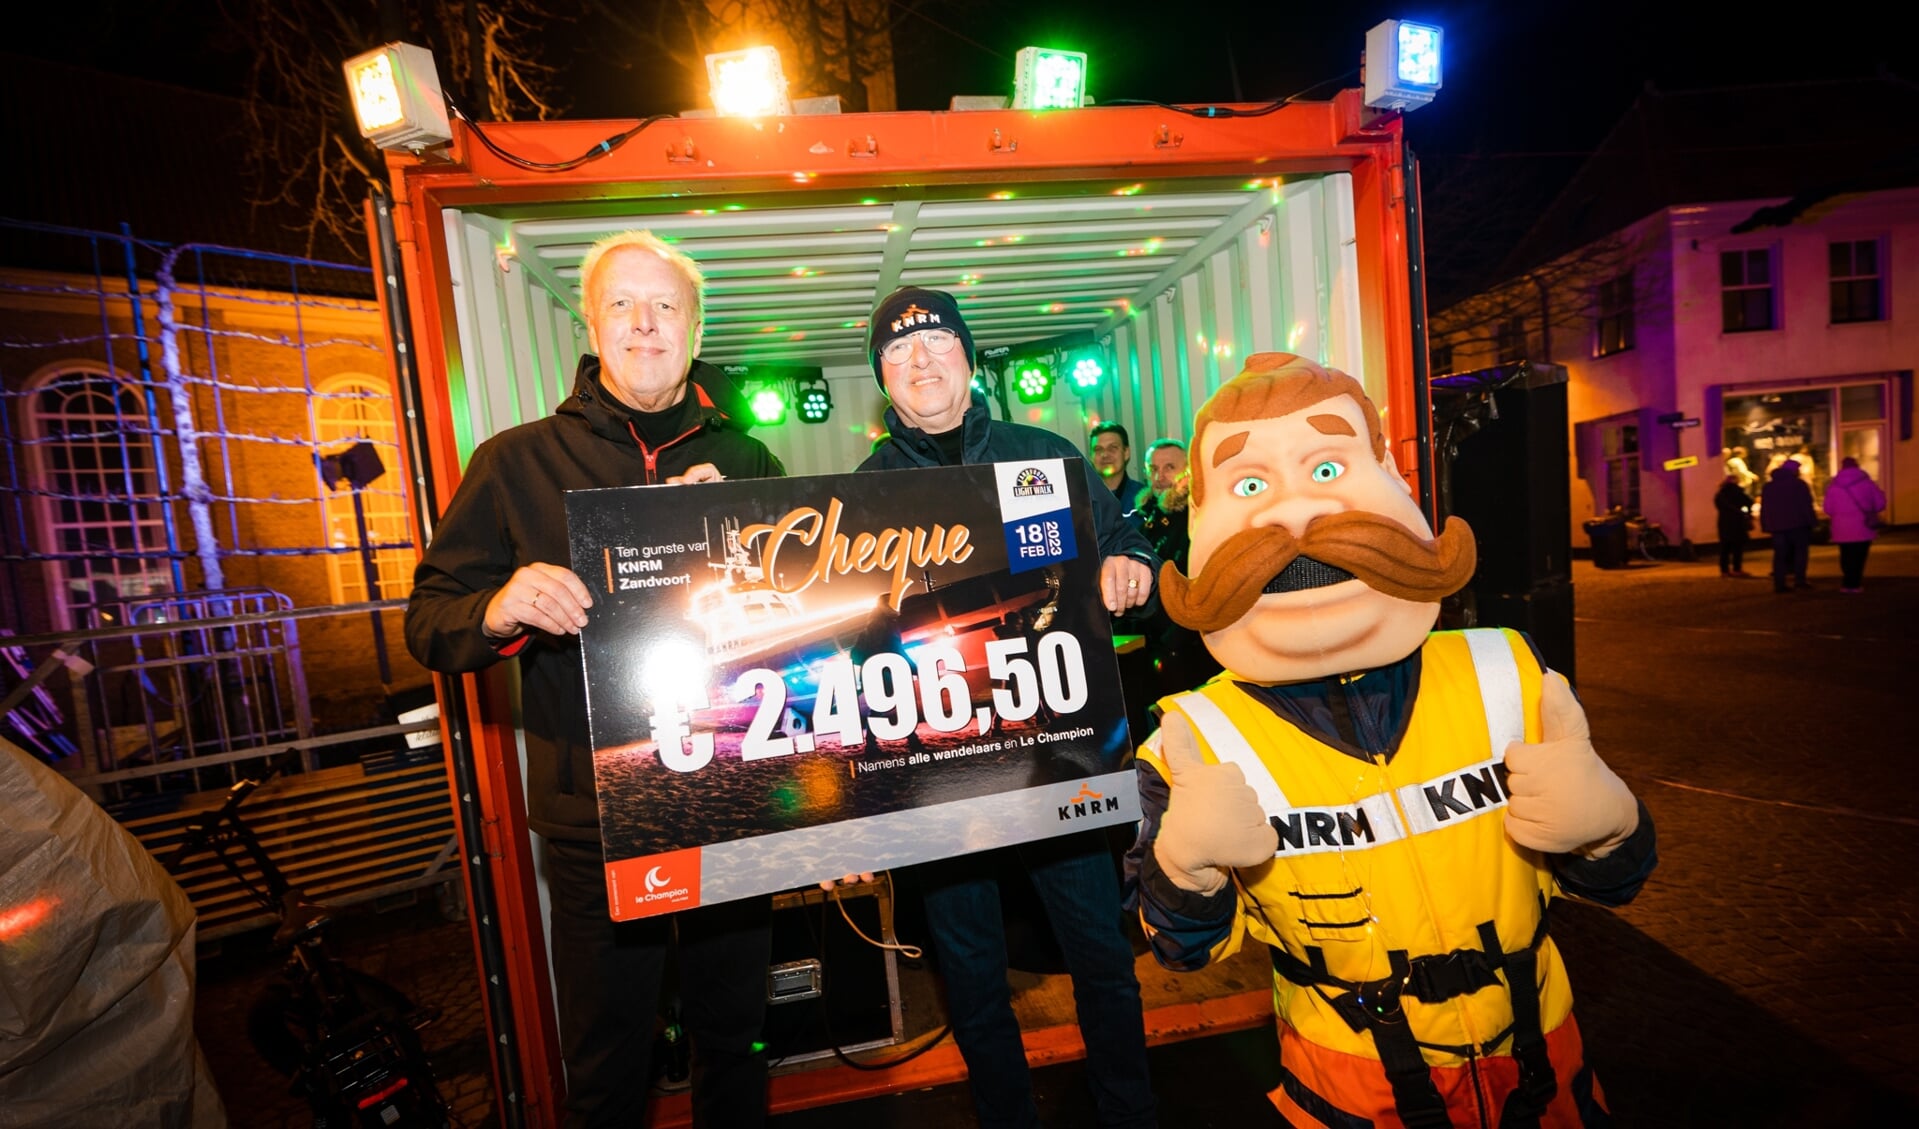 De 6.500 deelnemers hebben gezamenlijk € 2.496,50 bij elkaar gewandeld voor KNRM Zandvoort